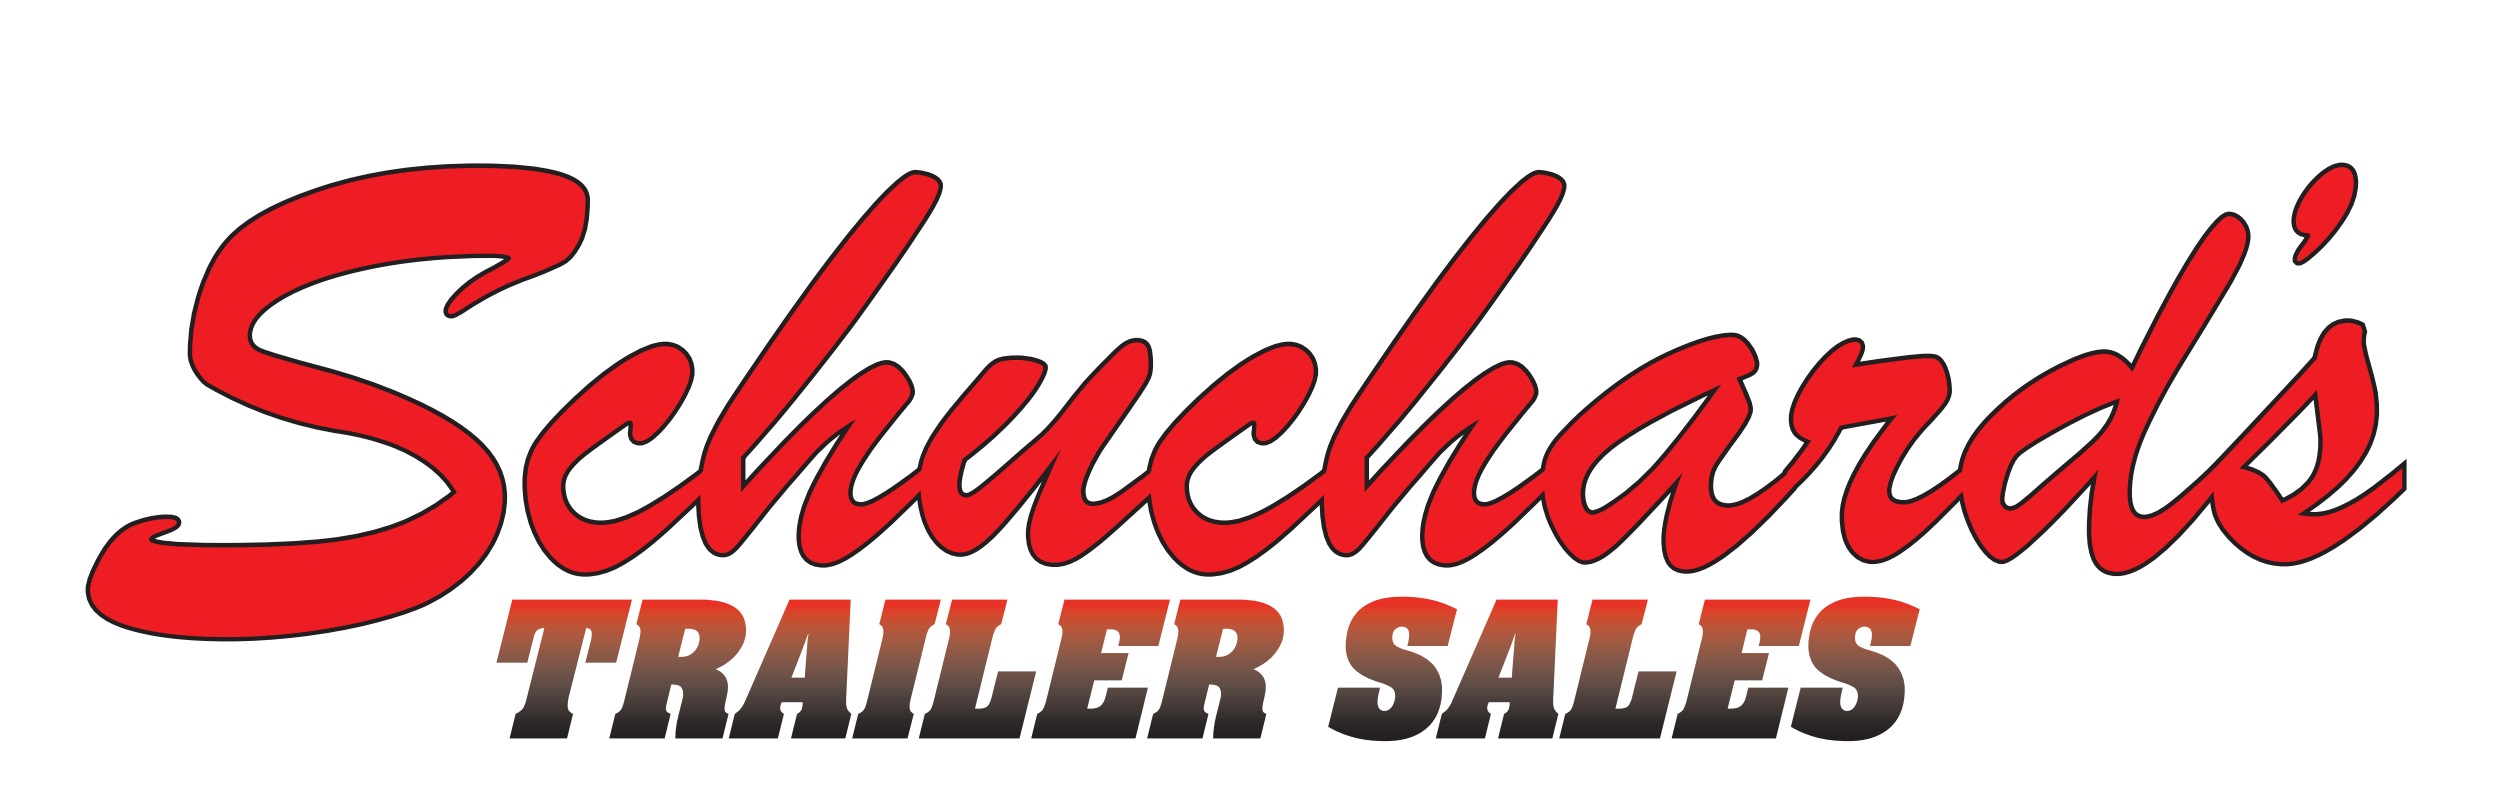 Schuchard's Trailer Sales